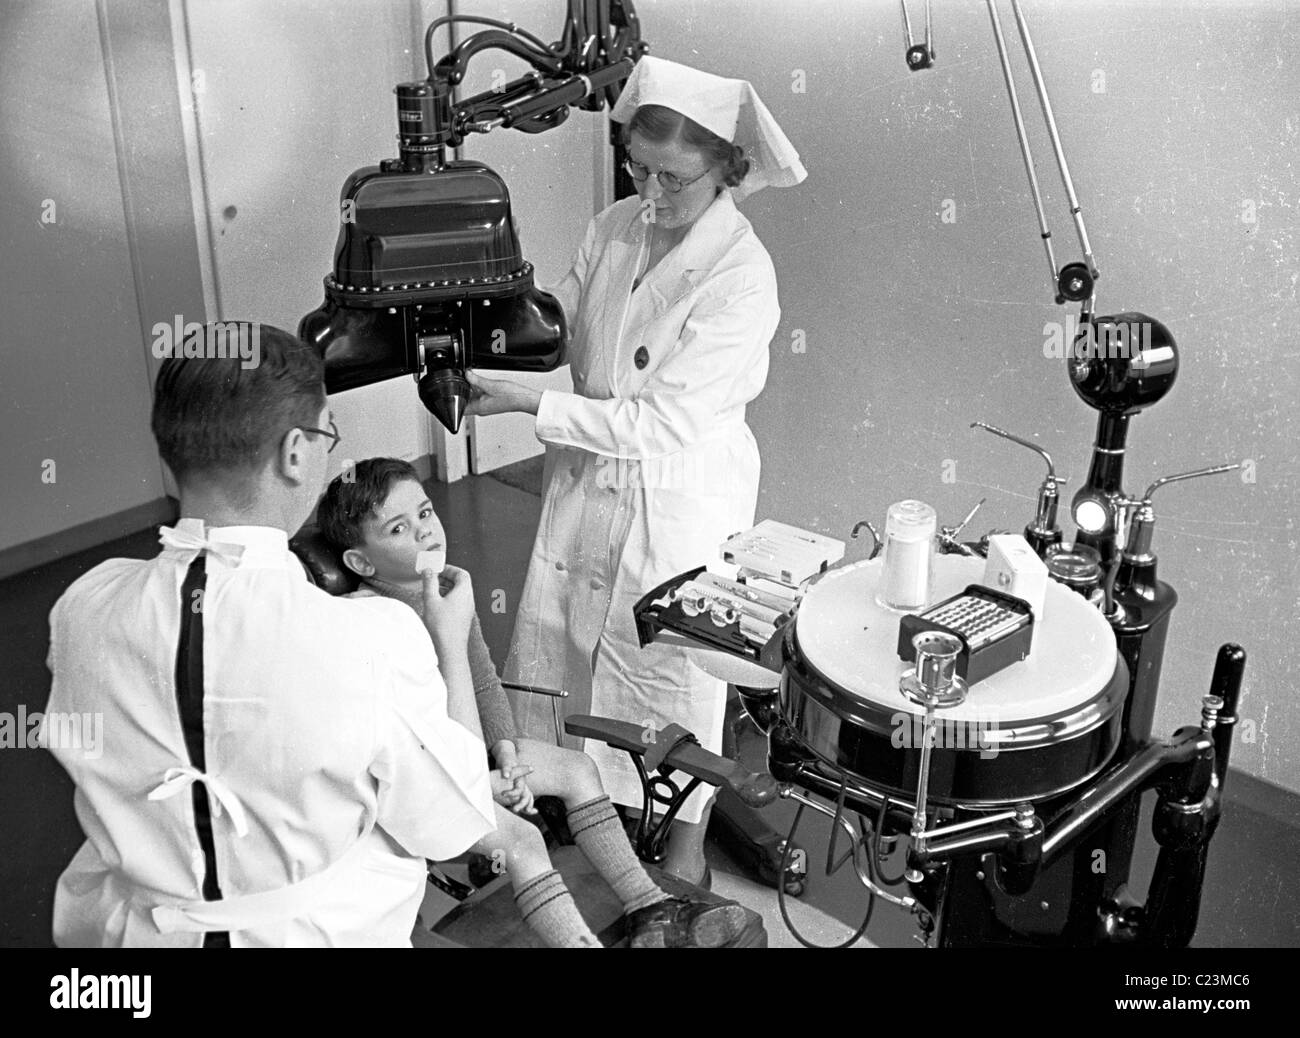 Historica 1950. In dem Bestreben, Junge in einem Zahnarzt Stuhl neben einem männlichen Zahnarzt sitzend, mit einer Krankenschwester, die zahnmedizinischen Ausrüstung, möglicherweise ein Röntgengerät. Stockfoto